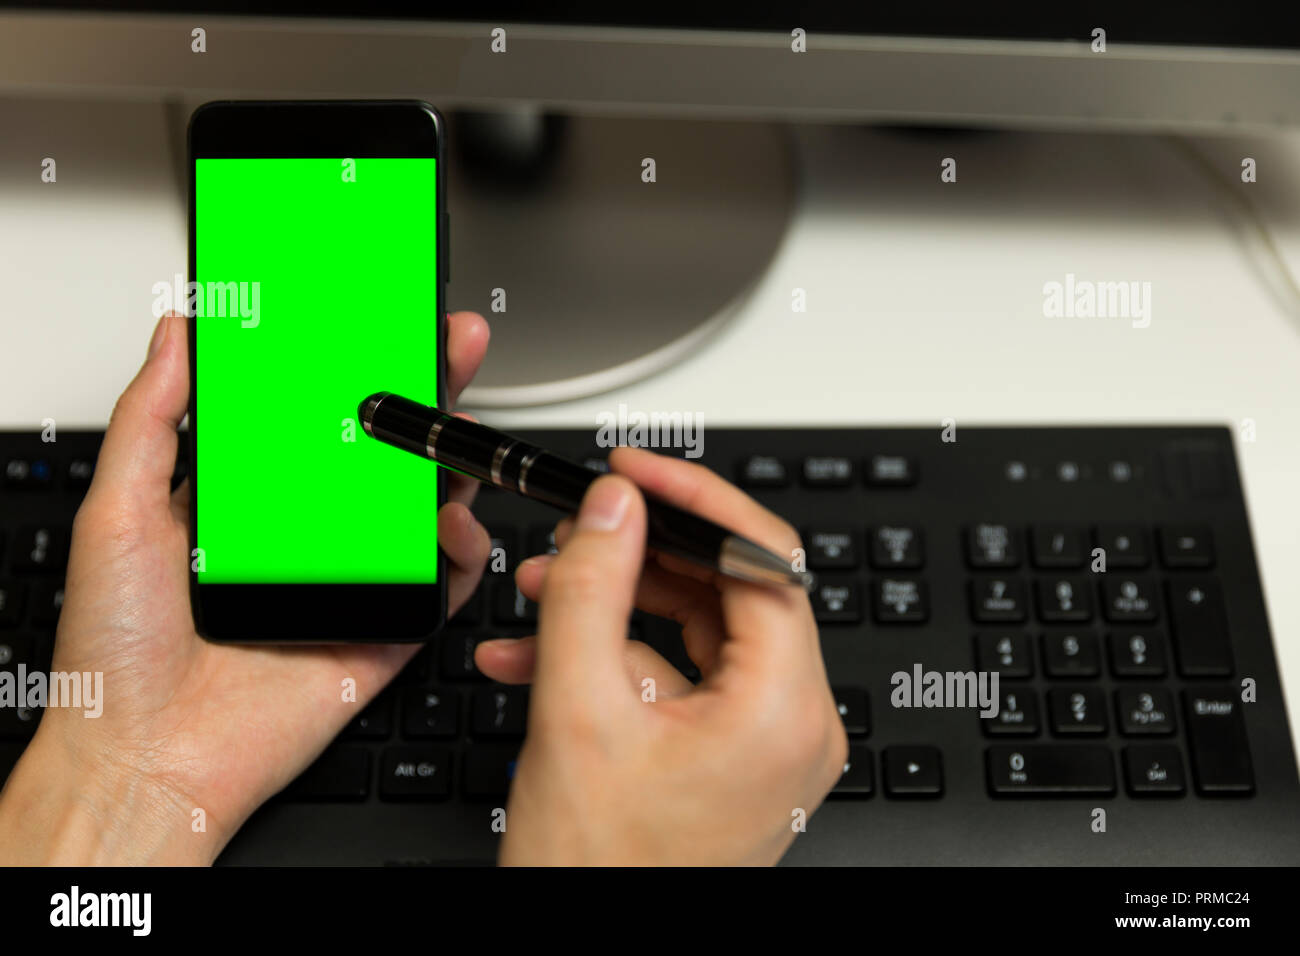 Le mani delle donne tocca lo schermo del telefono con la penna per il touchscreen. Telefono cellulare con una schermata verde. Foto Stock